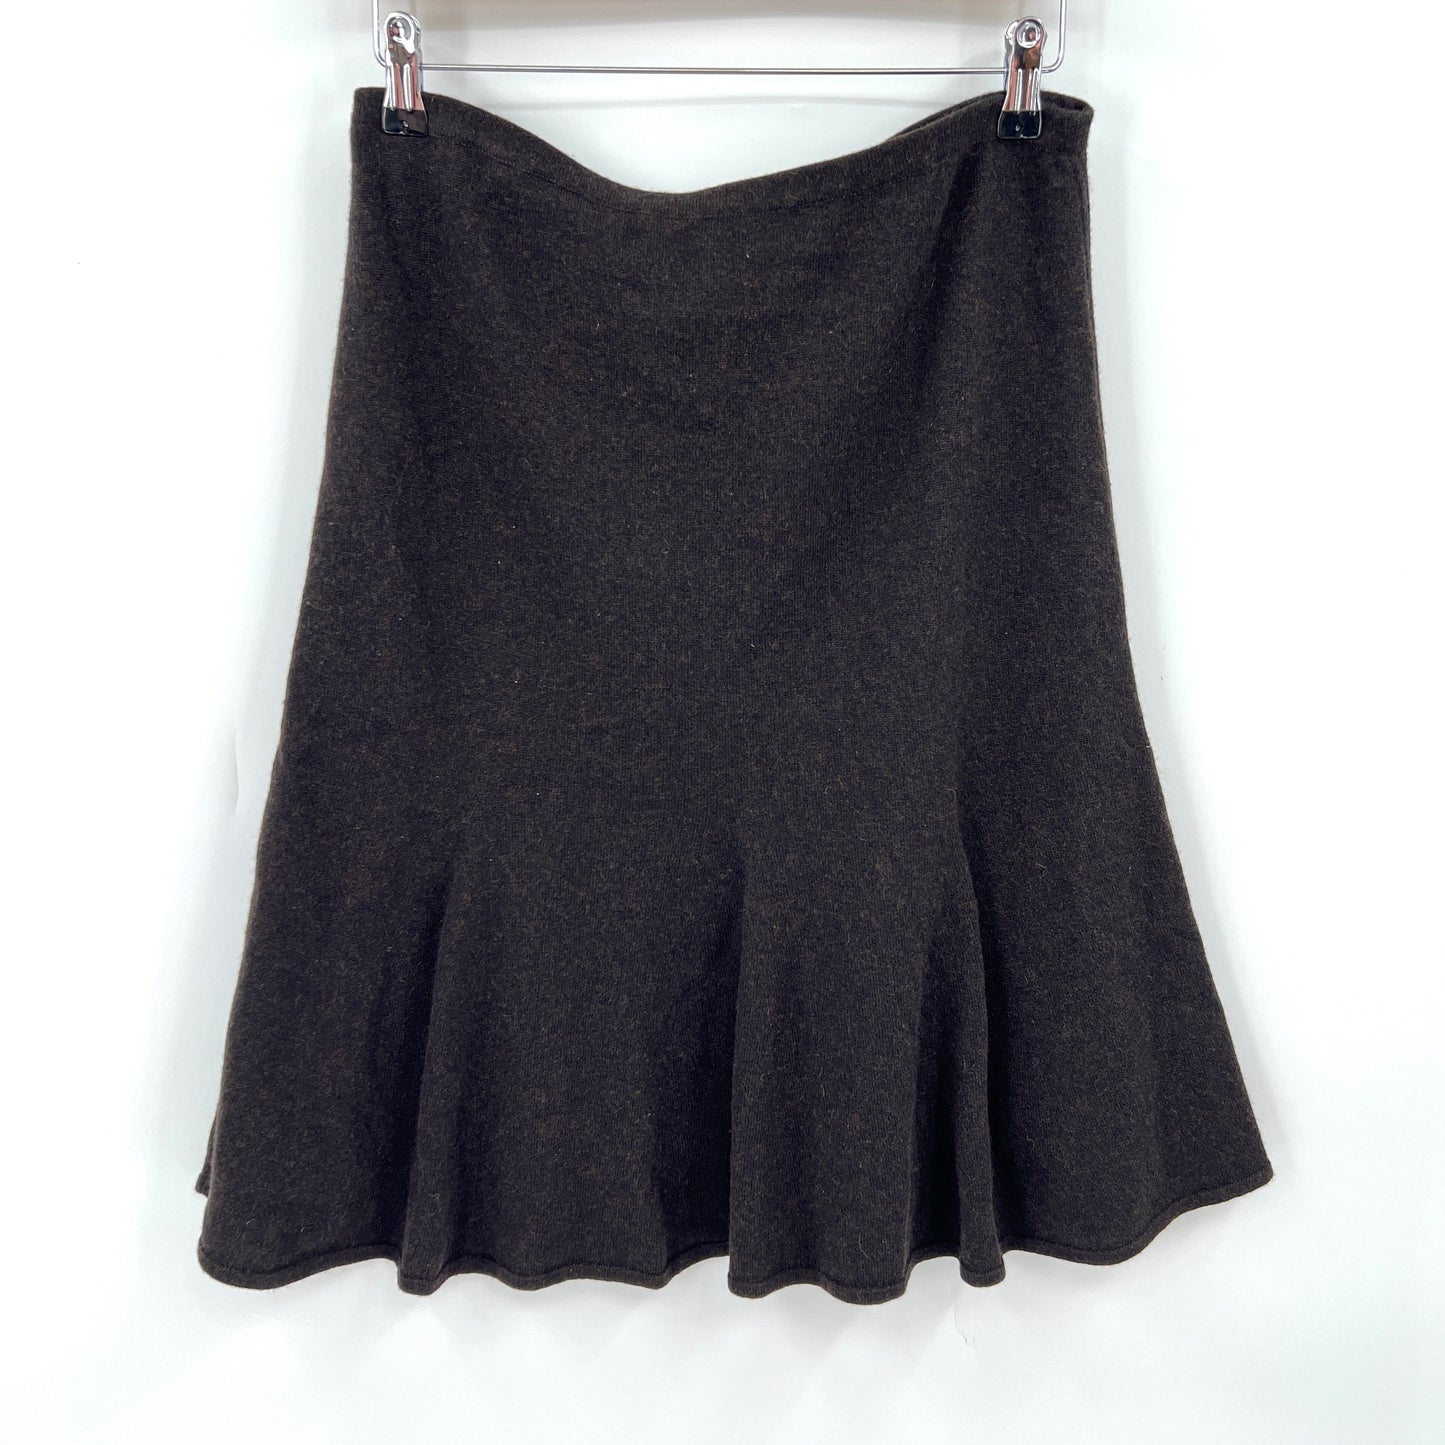 SOLD. Escada Cashmere Skirt 40EU